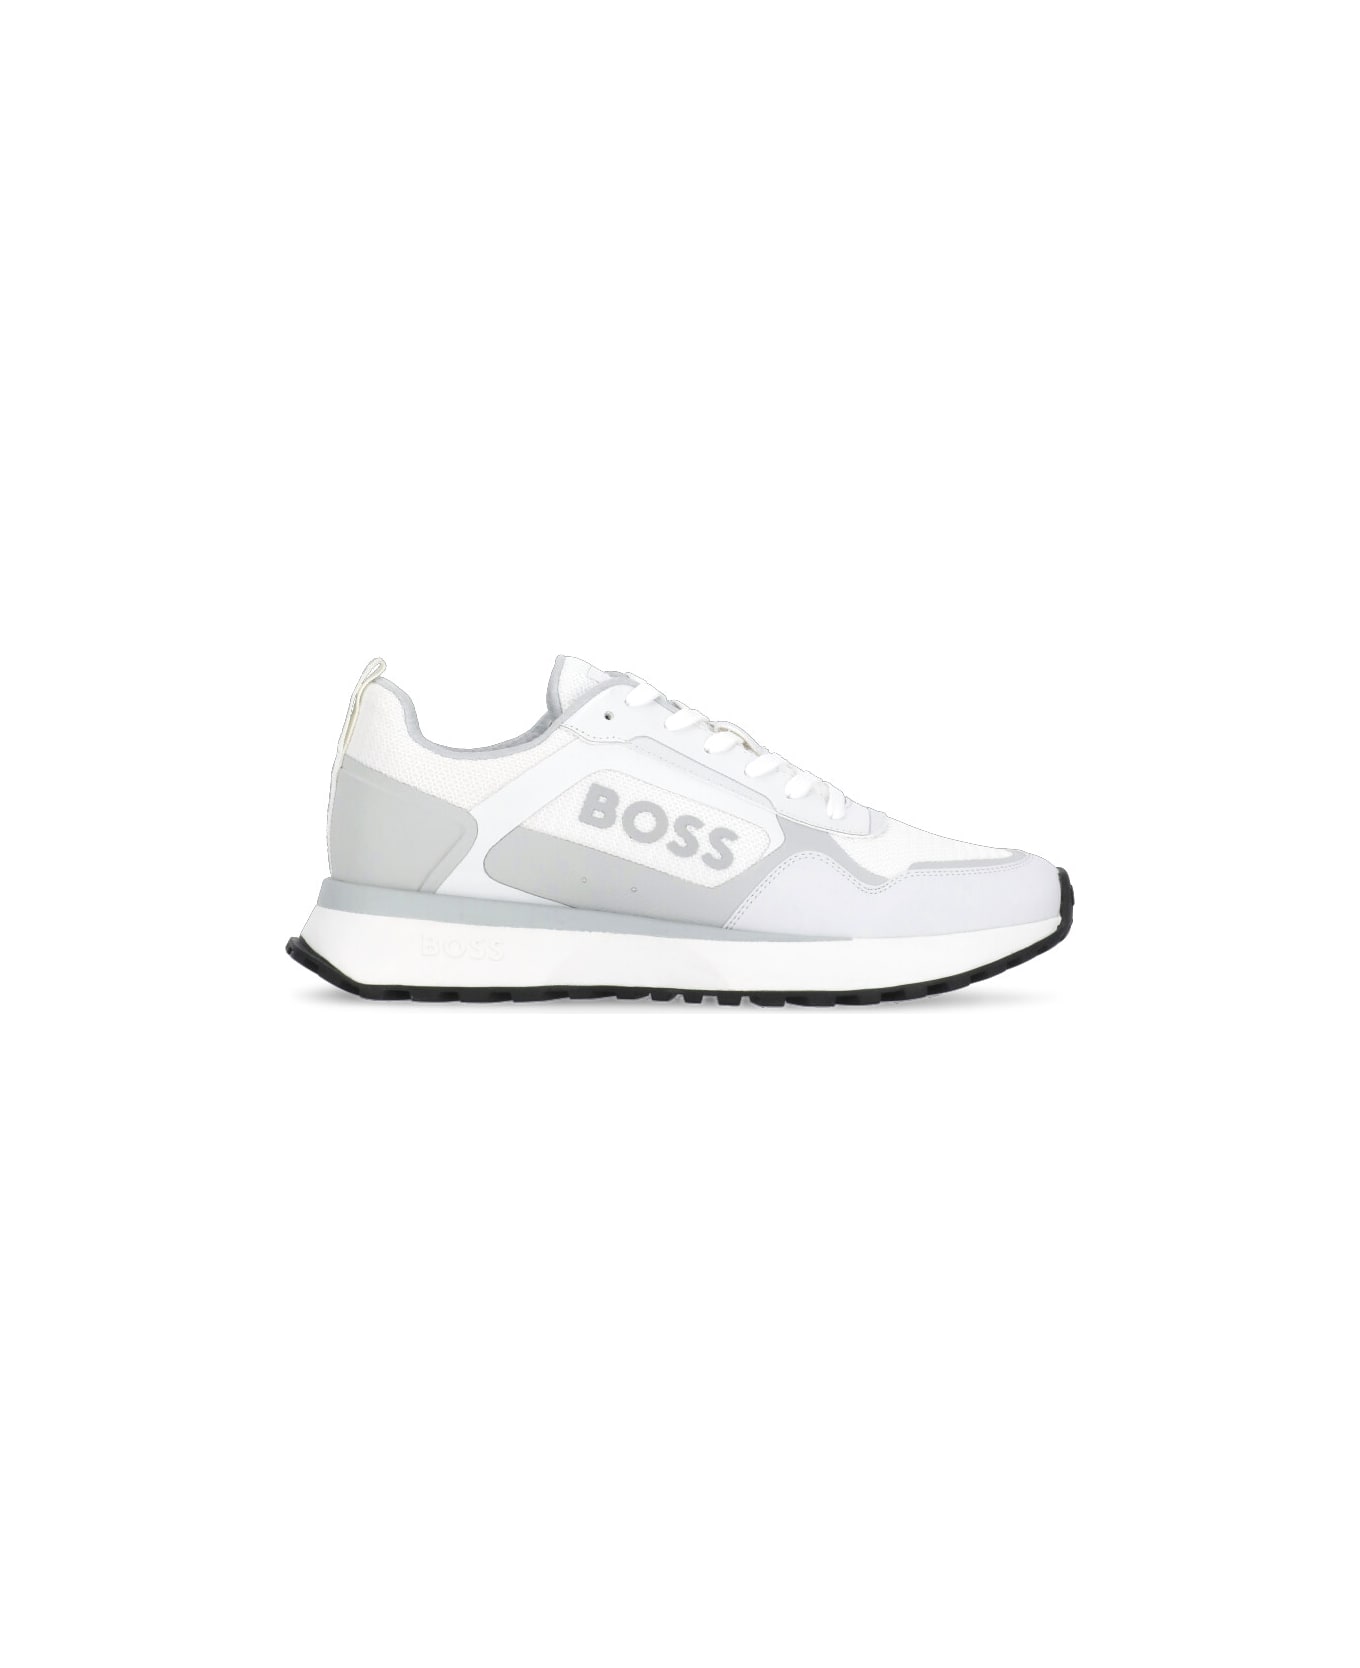 Hugo Boss Johan Runn Sneakers - White スニーカー